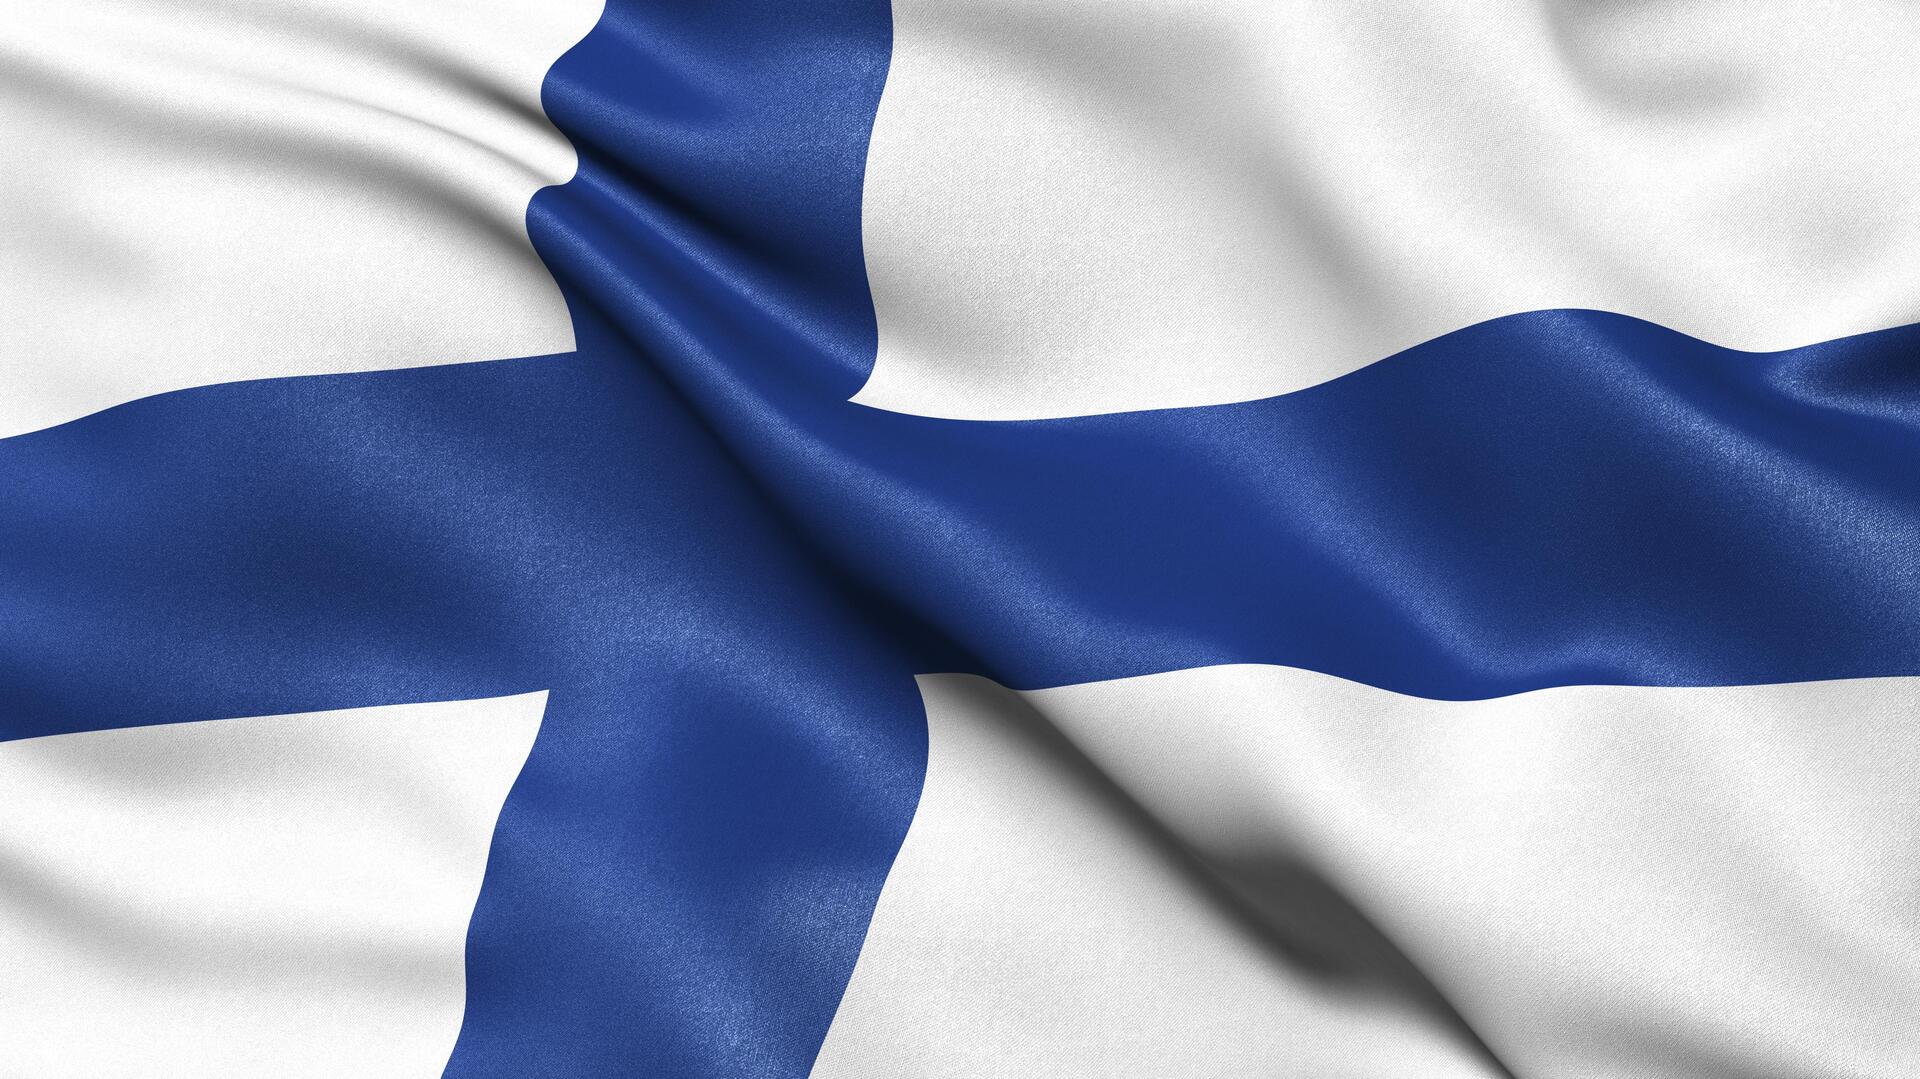 وسائل إعلام: فنلندا تصادر علامات تجارية روسية